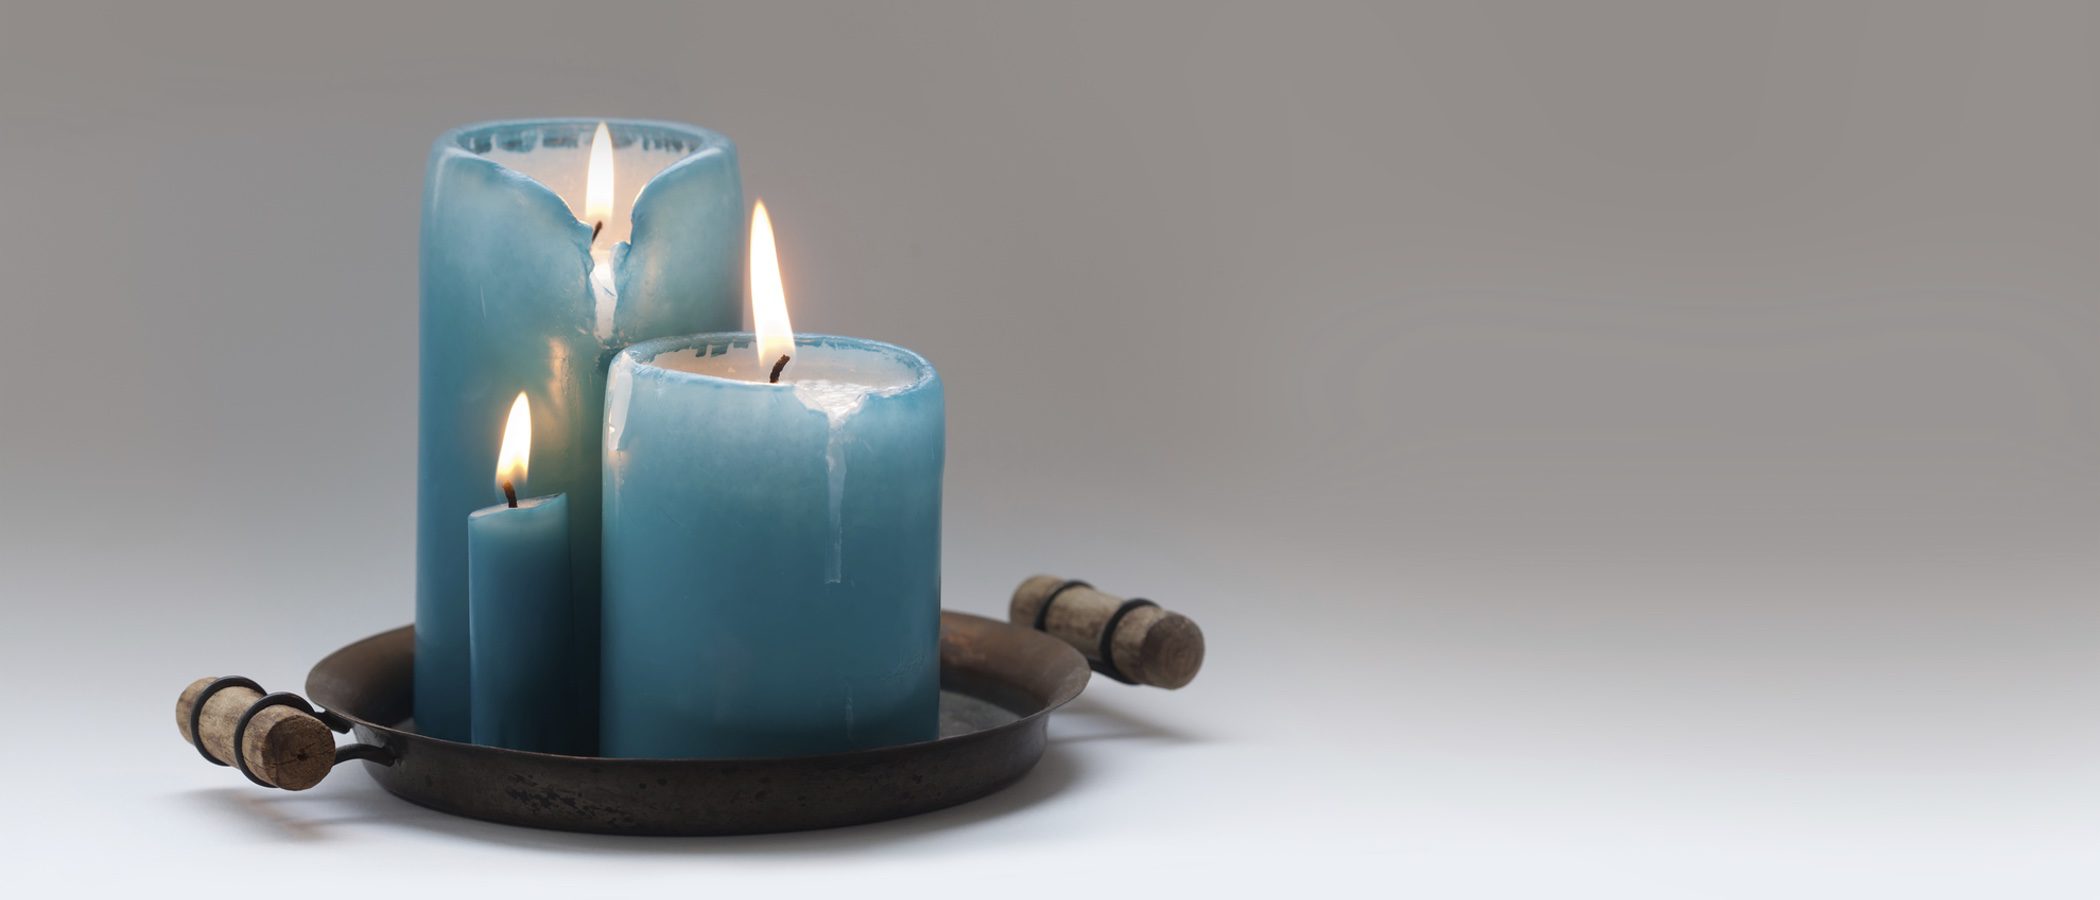 Rituales prohibidos con velas azules